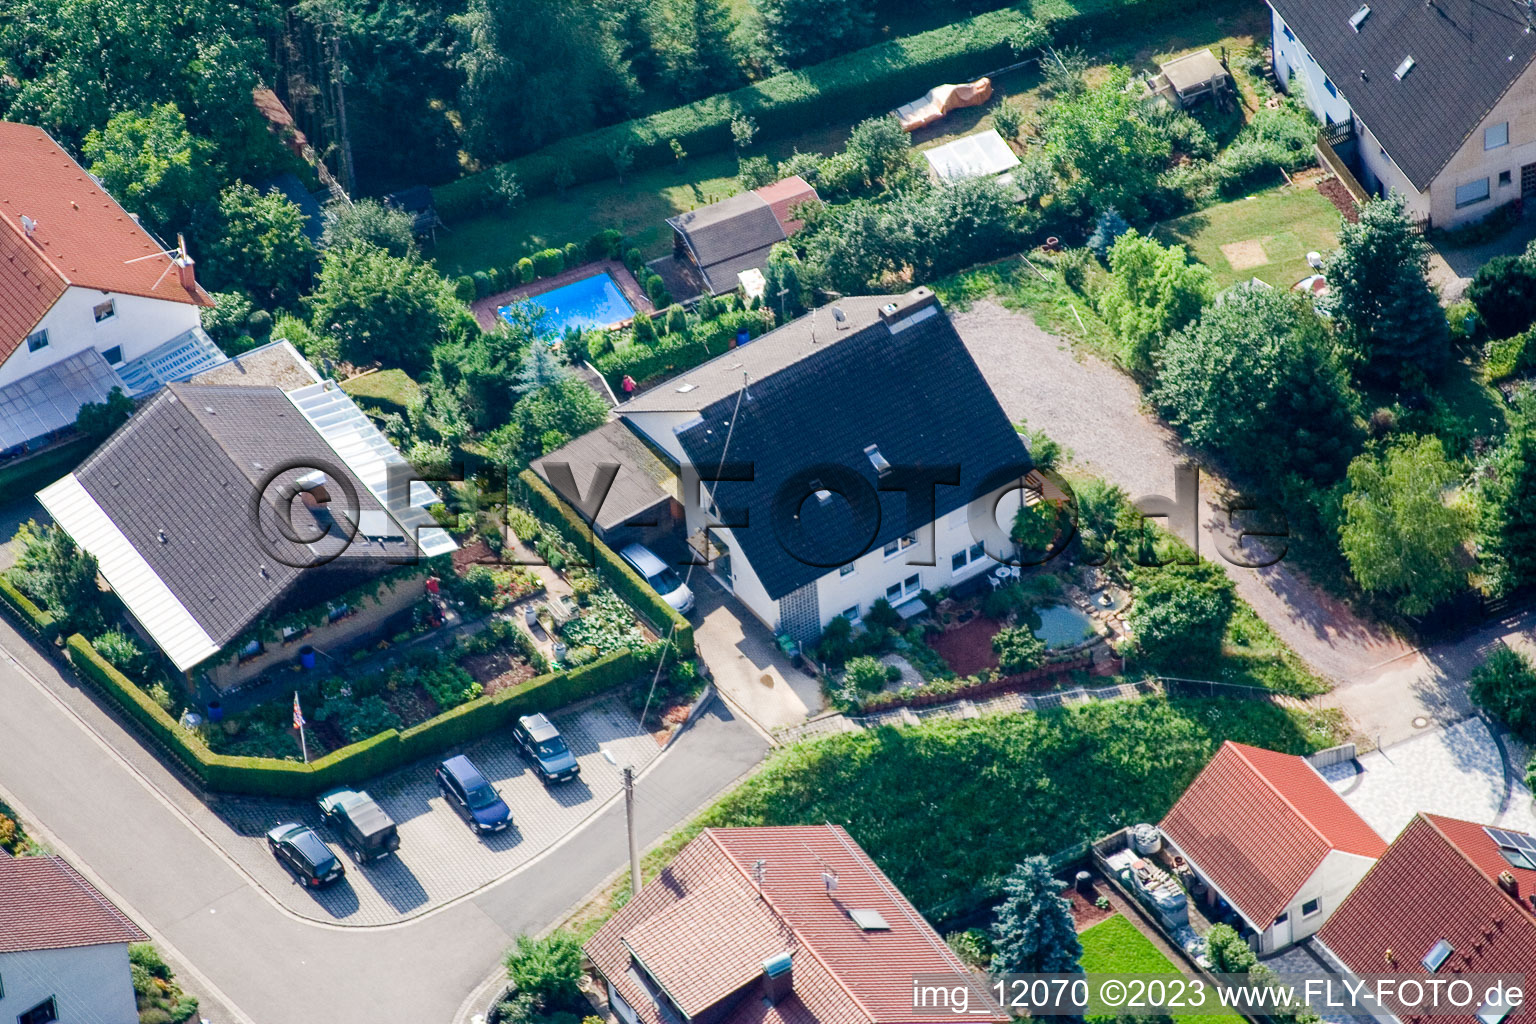 Ortsteil Gräfenhausen in Annweiler am Trifels im Bundesland Rheinland-Pfalz, Deutschland aus der Luft betrachtet